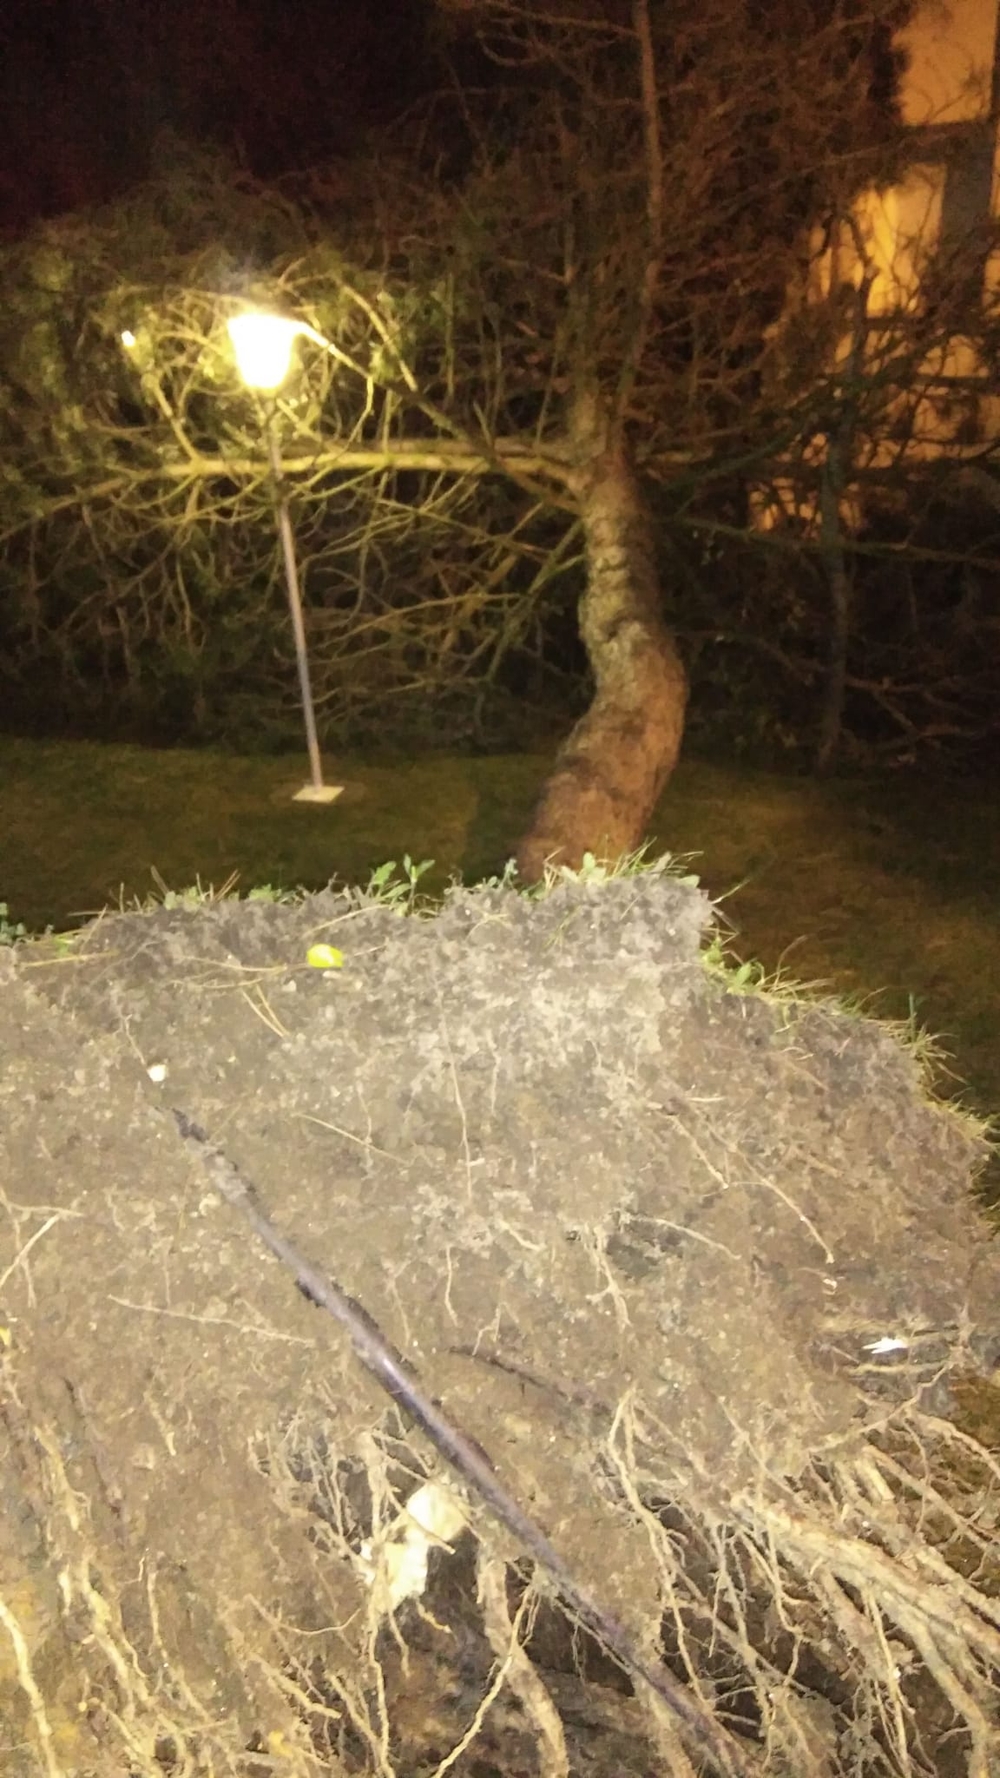 Árbol arrancado de raíz en Parque Robledo.  / El Día de Segovia